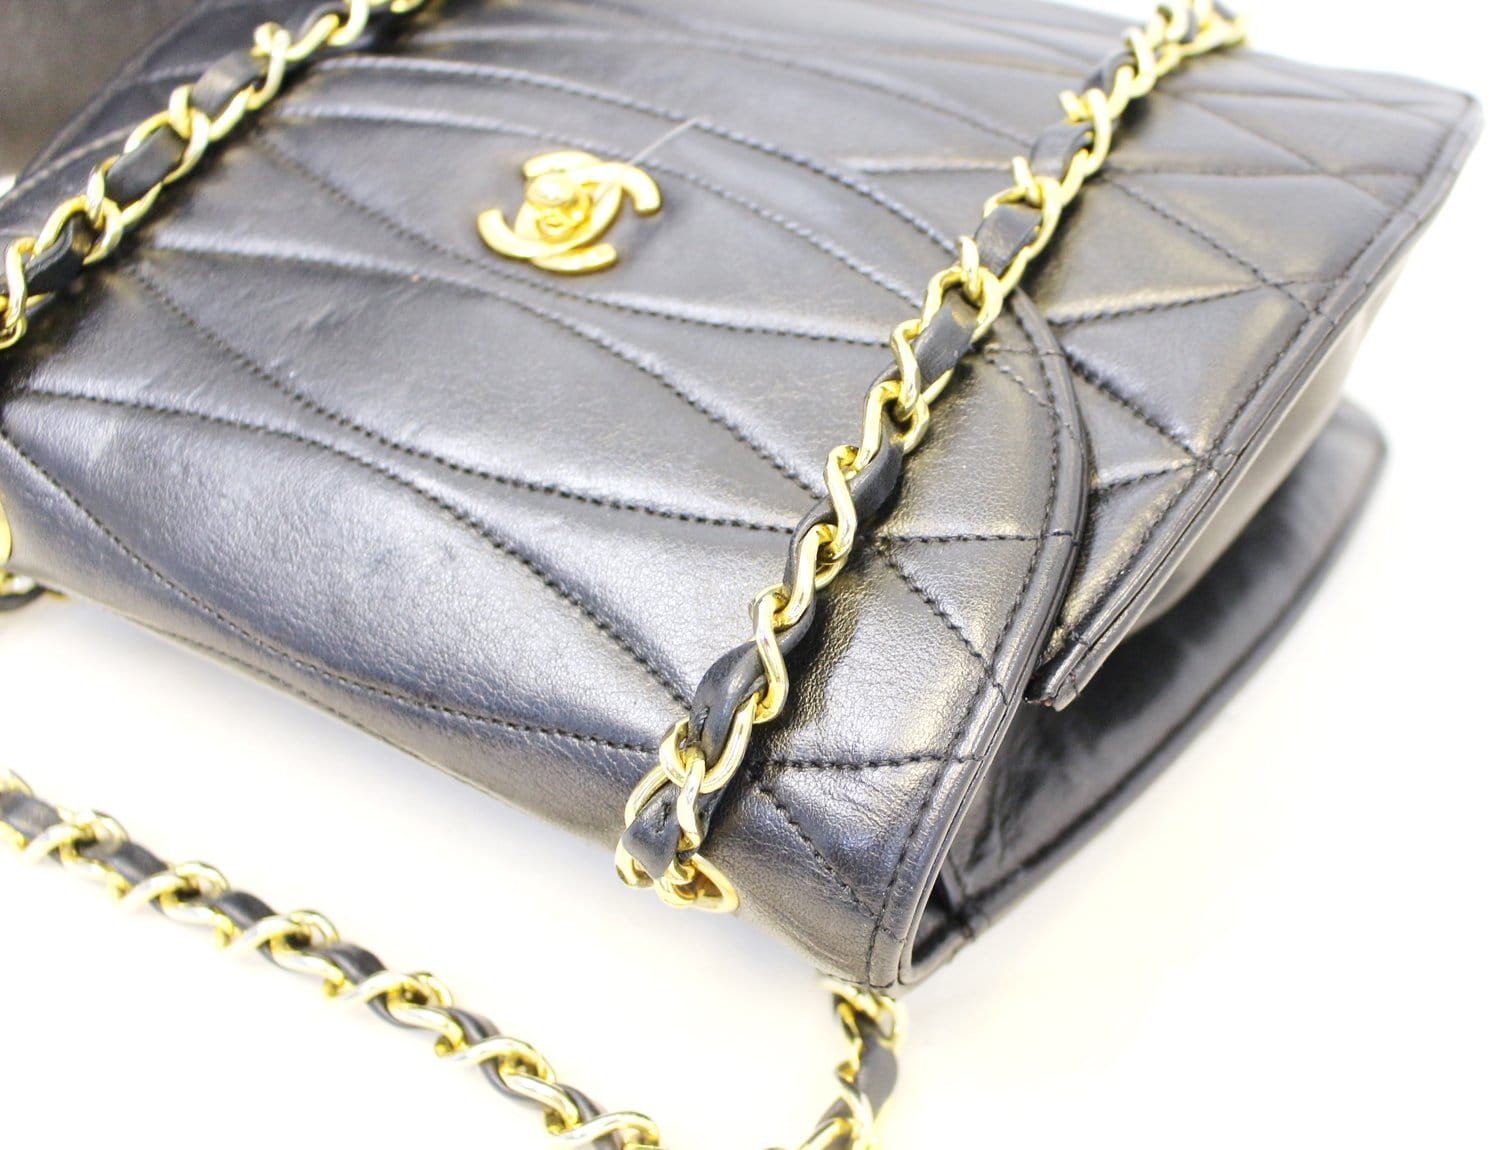 Rare Chanel Bag 